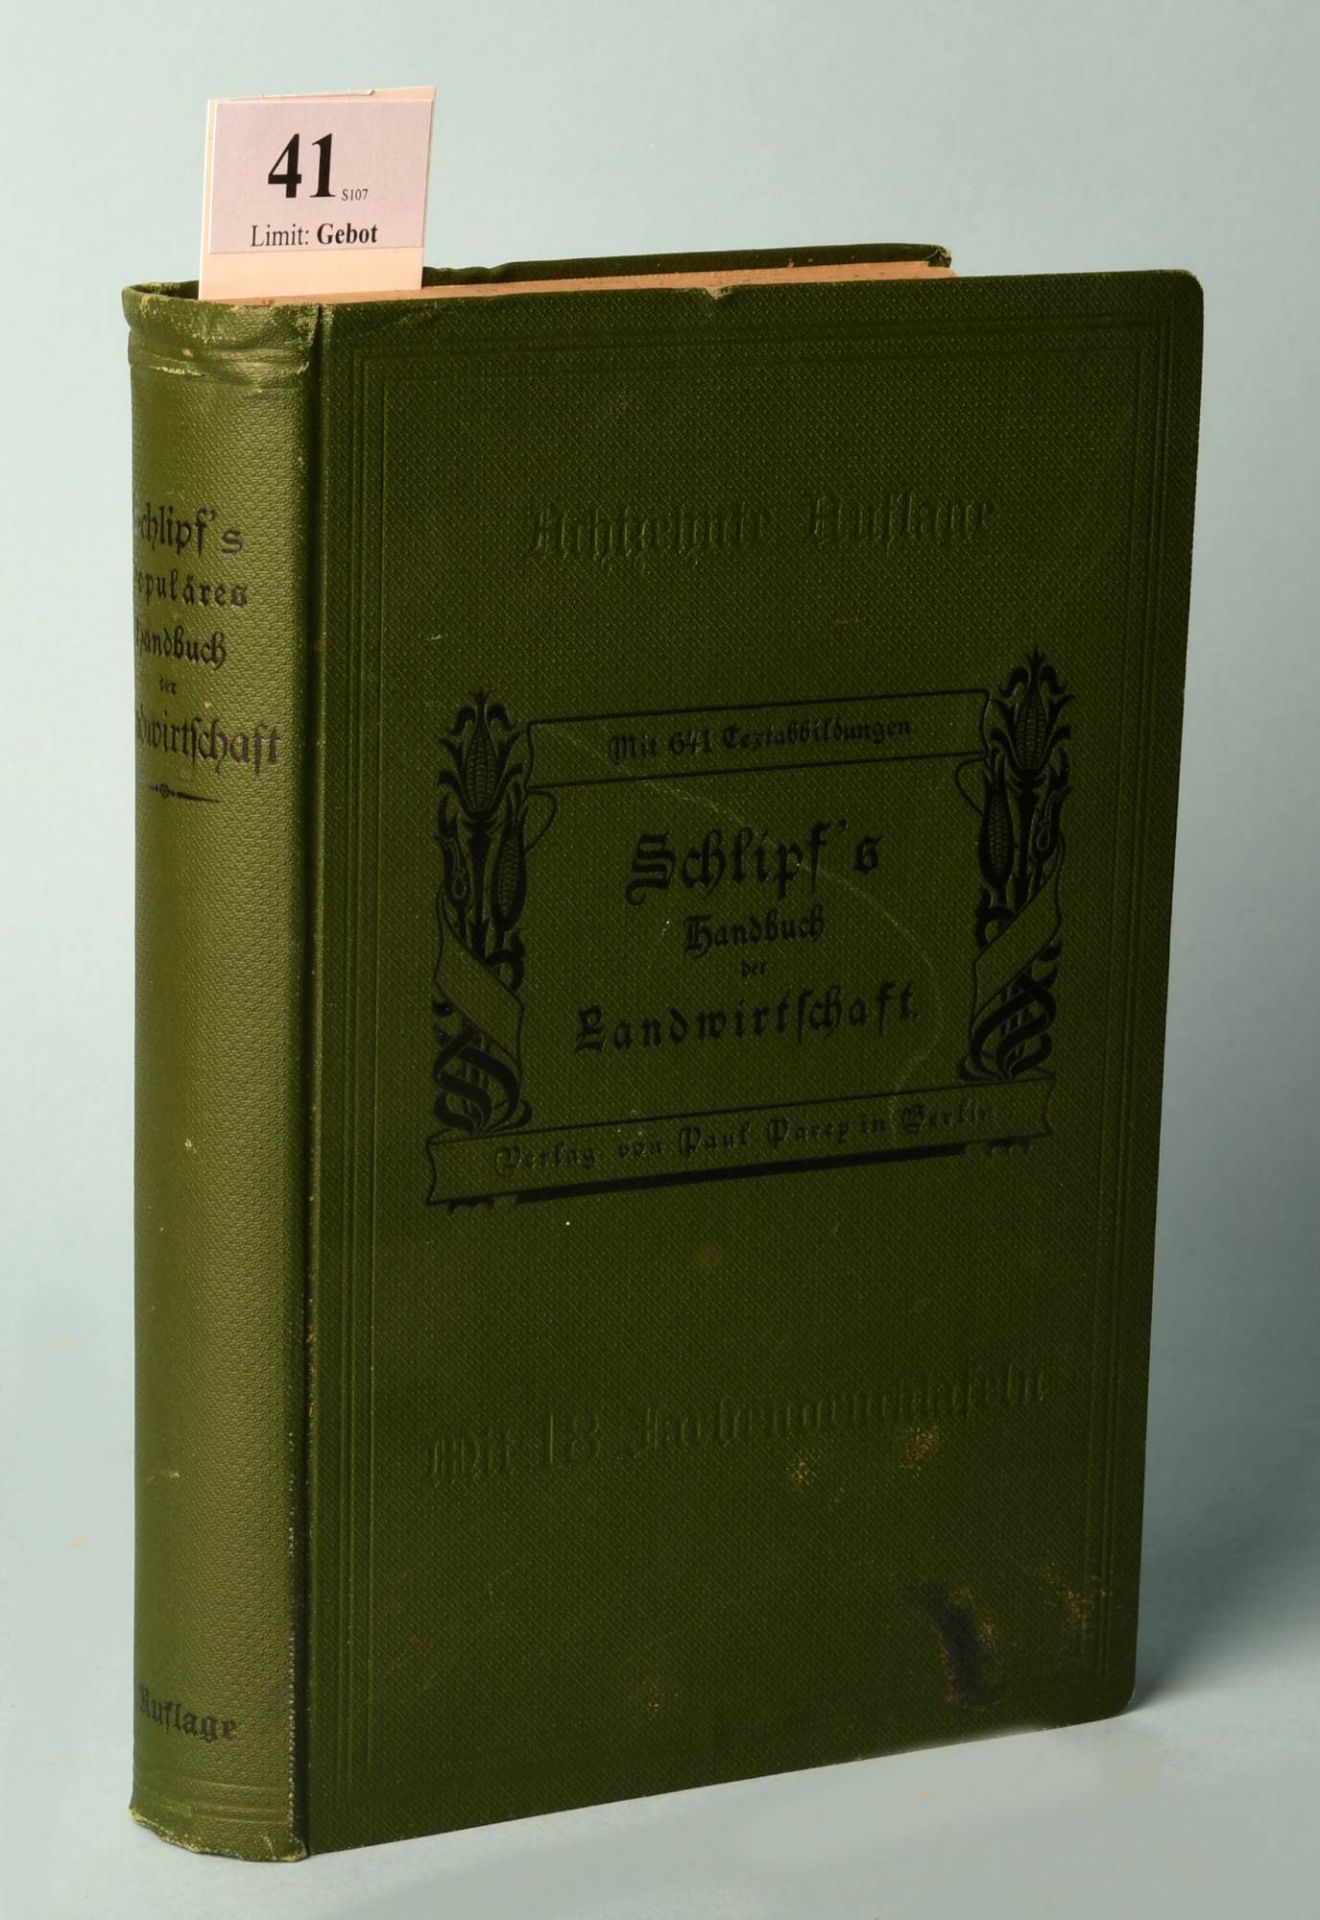 Schlipfs populäres Handbuch der Landwirtschaft